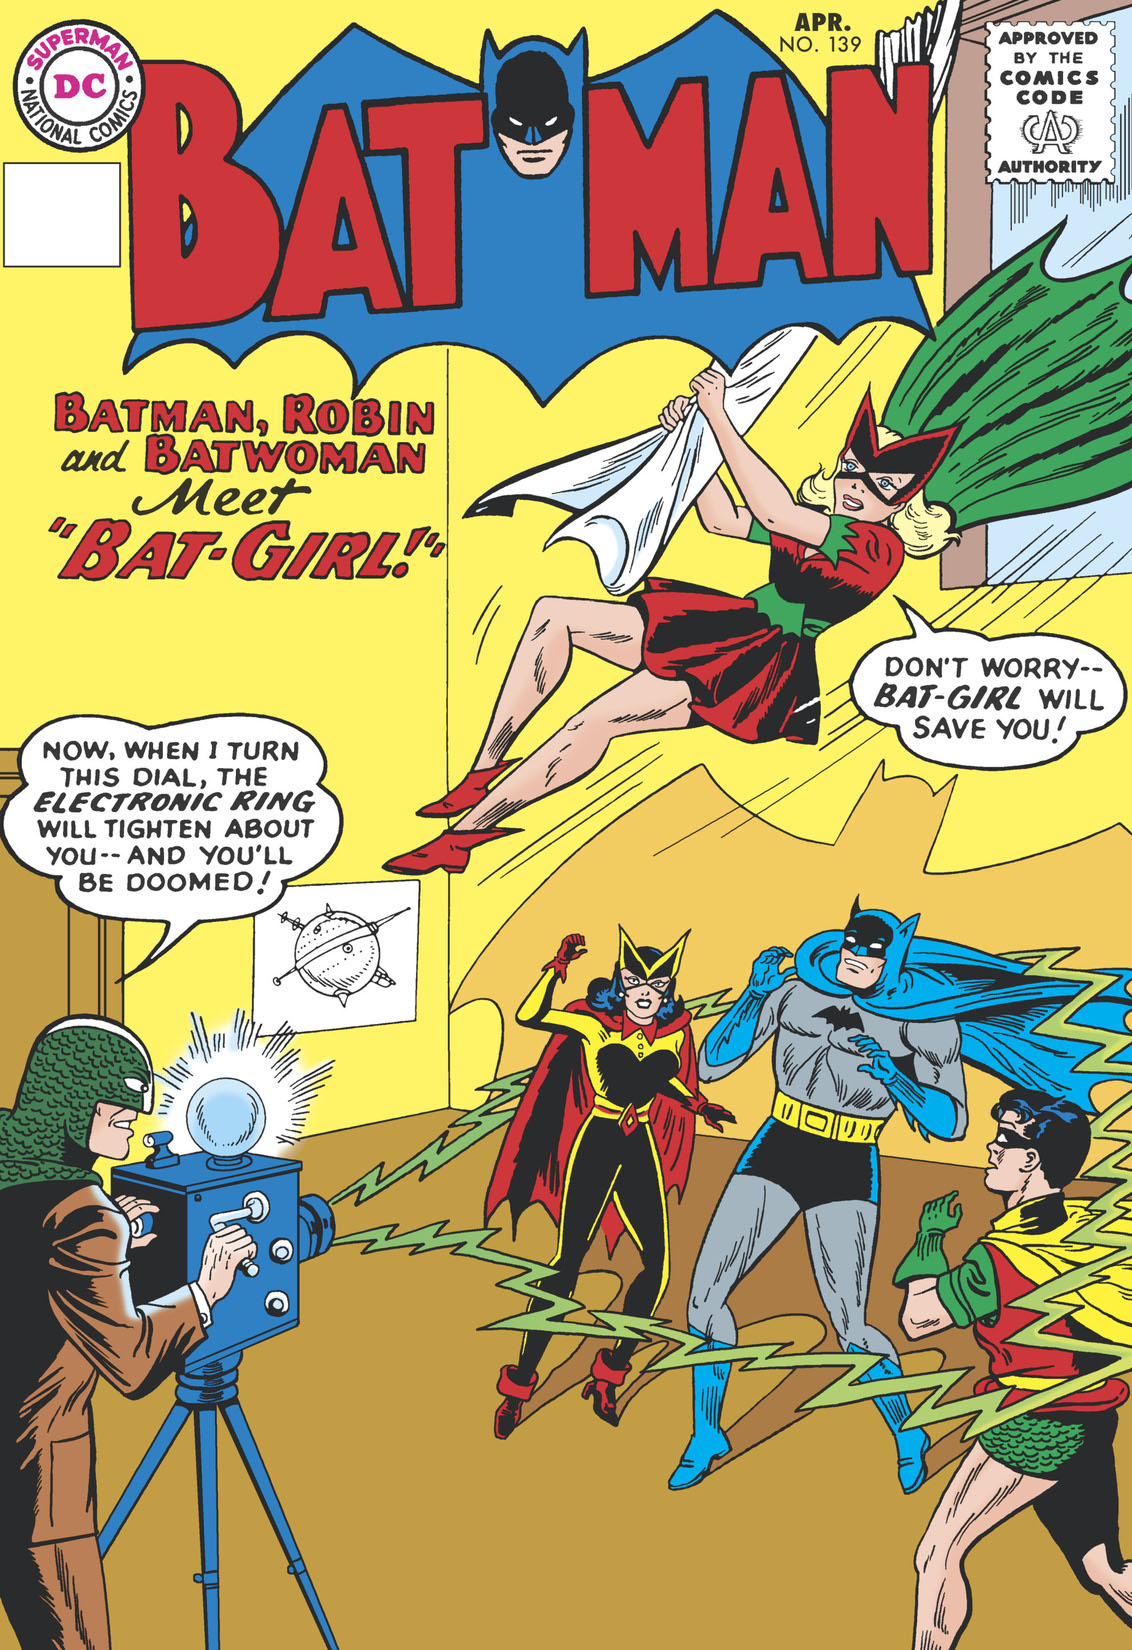 Batman (1940-) #139 preview images